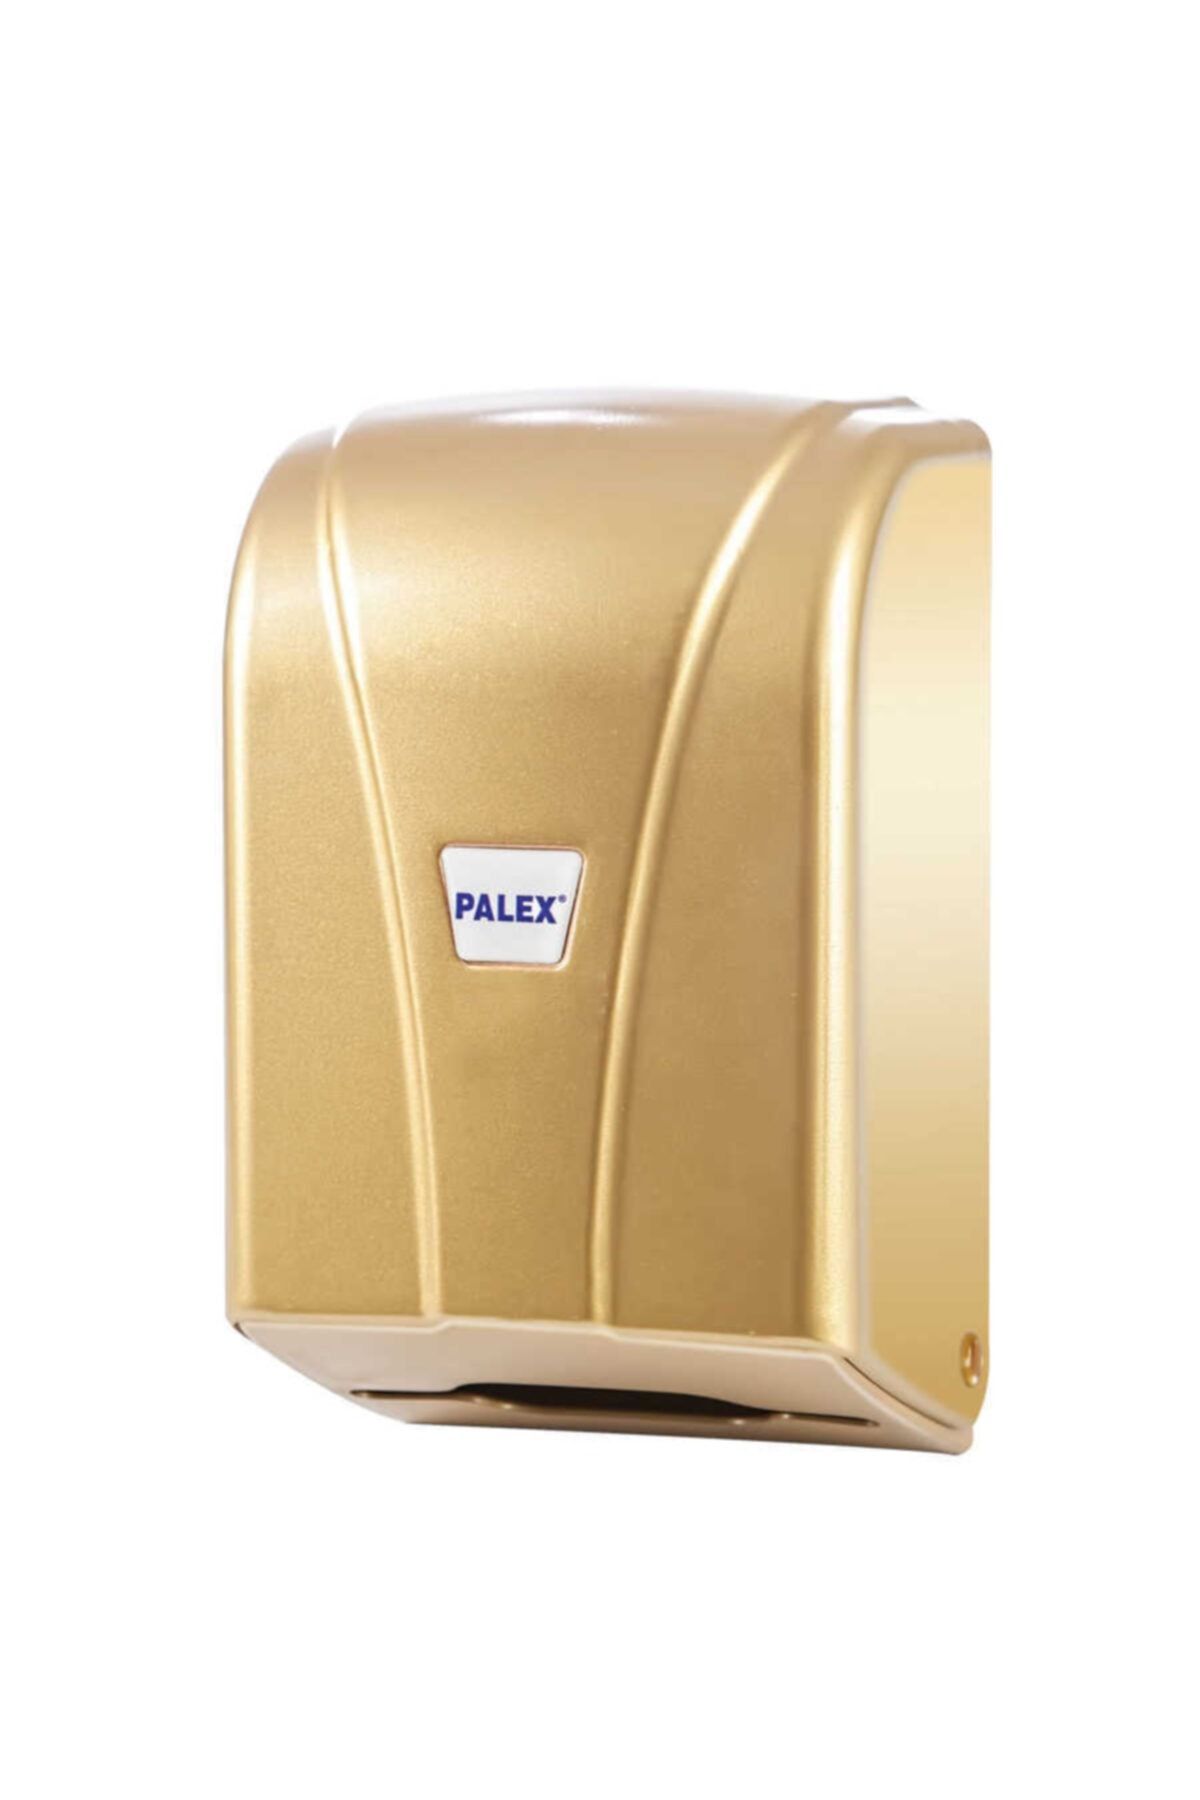 Palex (ün-ev) C Katlama Tuvalet Kağıtlığı (tuvalet Kağıt Dispenseri) Gold 3438-g